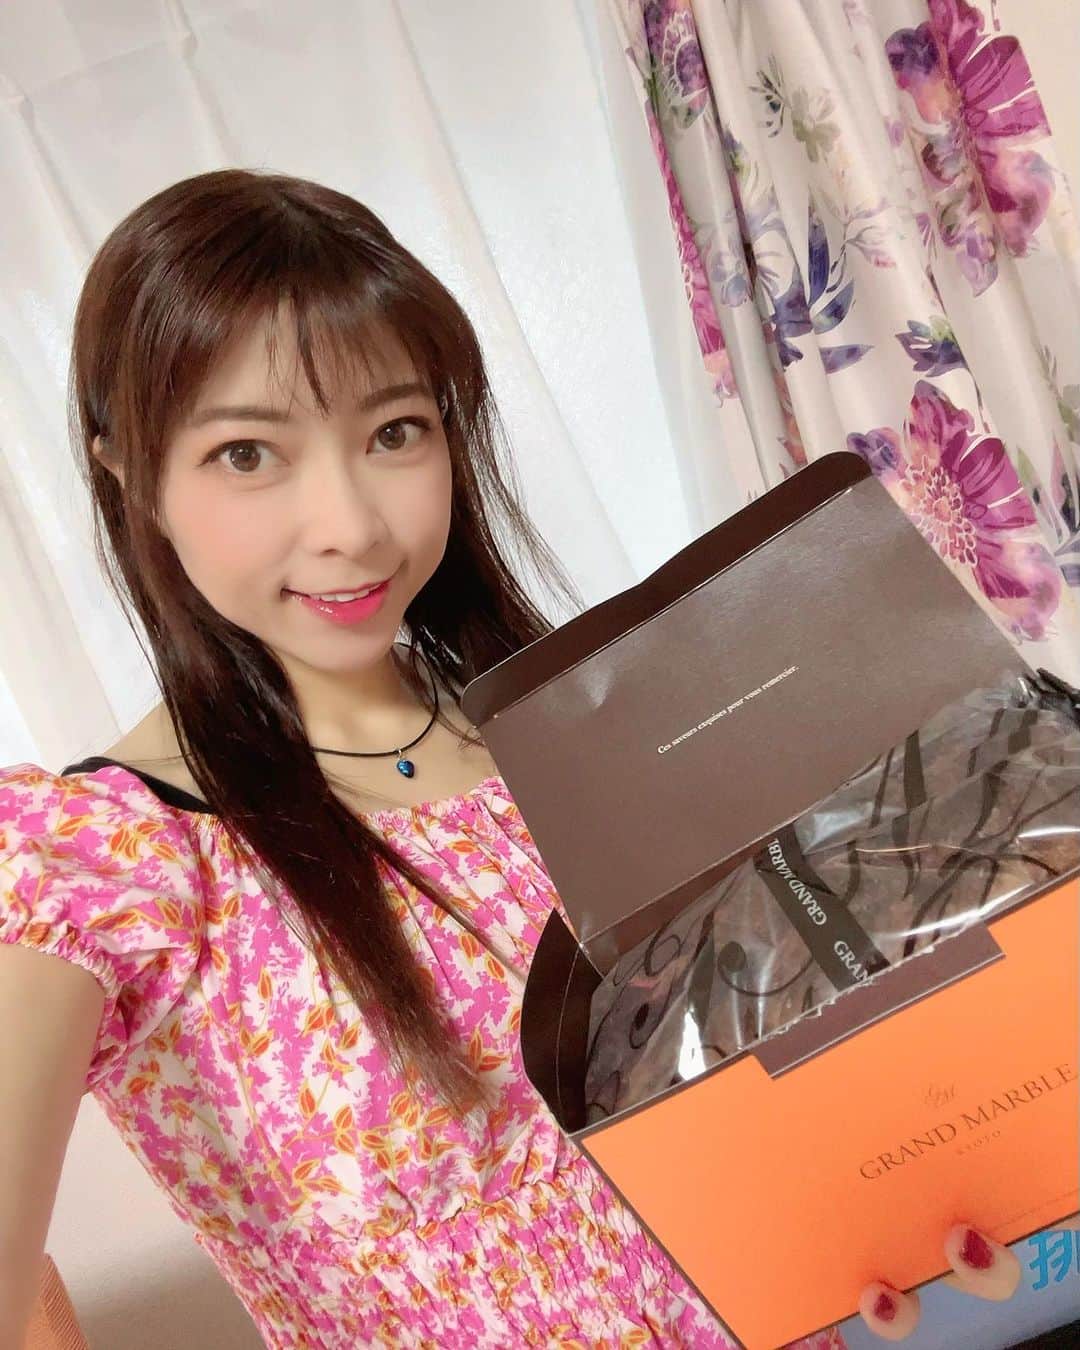 DJ MIYAのインスタグラム：「きゃっほぉ♡デニッシュ好きぃ？？  京都駅にもお店がある『グランマーブル』さんの期間限定のデニッシュを食べてみたよぉ💖  チョコレートデニッシュ「フォンダンショコラ」  PR @grandmarble  紙袋もオレンジ色で高級感がありますね🎉  中はしっとりとした濃厚なチョコレートがとろけるように入っていてとても美味しい〜！！！  美味しいデニッシュに出会えるとすごい嬉しいよね(^з^)-☆  グランマーブルさんは季節によって楽しめるマーブルデニッシュなどを販売されていて飽きることなく色々と食べたくなってしまいます(^o^)  ありがとうございました🎵  こちらは2024年2月29日までの期間限定販売品だよ❤️  みんなチェックしてみてね♡  #grandmarble #チョコレートデニッシュ #フォンダンショコラ #通販スイーツ #通販グルメ #チョコ好き #チョコレートパン  #お取り寄せスイーツ #お取り寄せパン  #パン屋さん #グルメ #グルメ女子 #グルメインフルエンサー #グルメインスタグラマー #お取り寄せグルメ #お取り寄せ　#スイーツインフルエンサー #スイーツインスタグラマー #インフルエンサー #インスタグラマー #チョコデニッシュ #グランマーブル #マーブルデニッシュ #フォンダンショコラ #グルメブロガー #おとりよせ #おとりよせグルメ #おとりよせパン #お取り寄せギフト #お取り寄せ好き #京都パン屋」